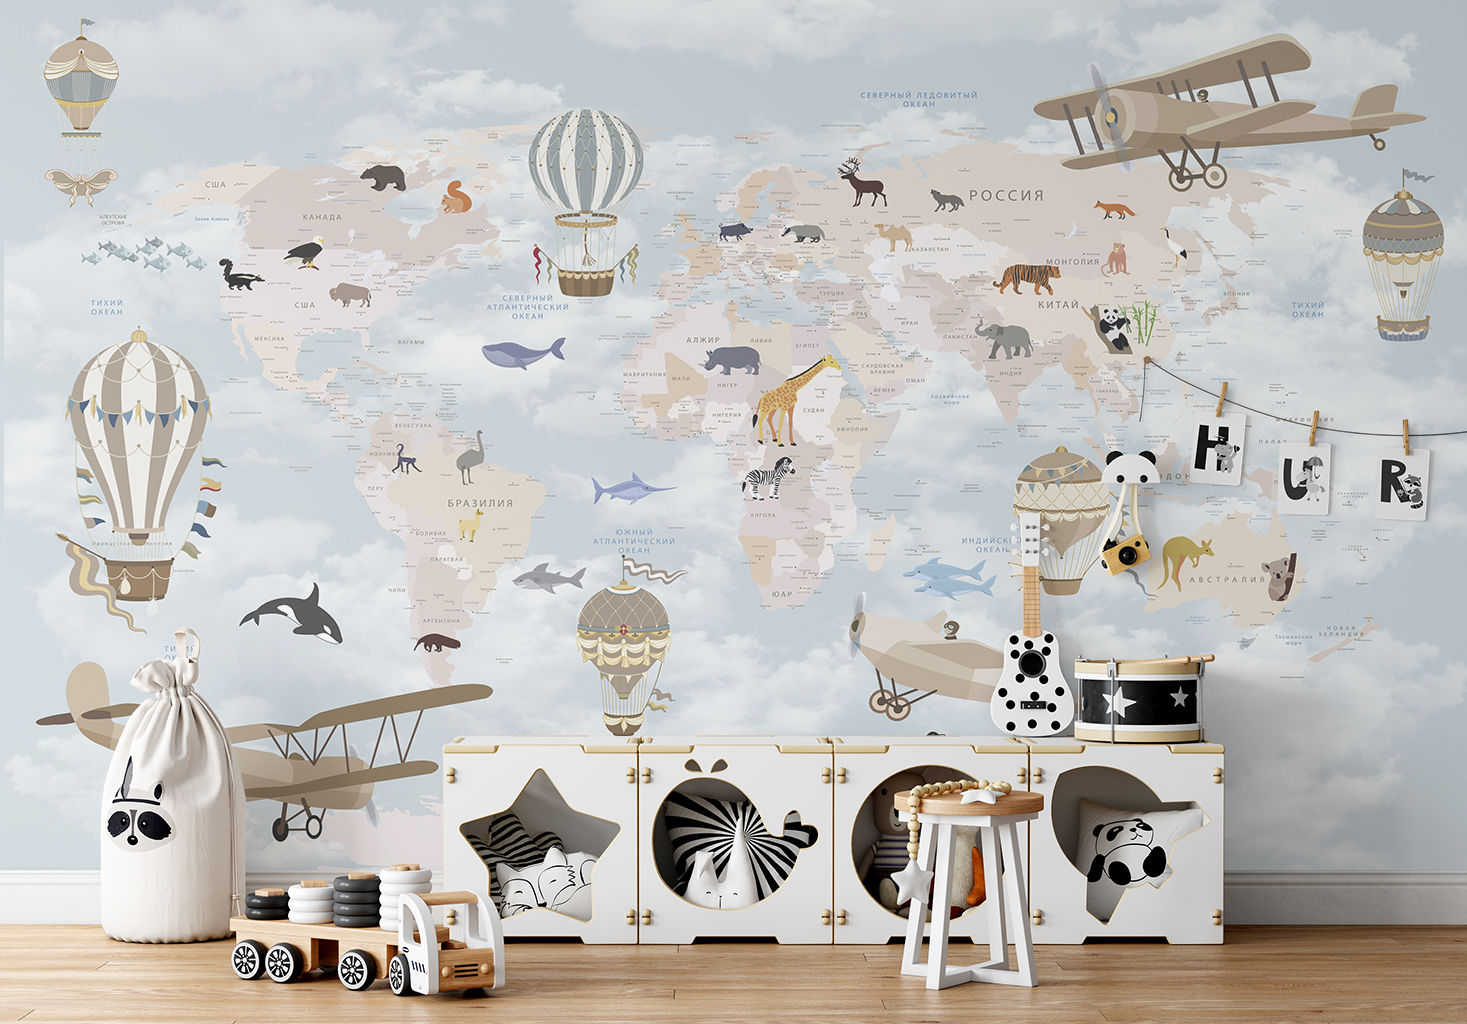 Фотообои Photostena Карта мира на русском с животными 4,5 x 2,7 м подарочная карта аквафор 2000р